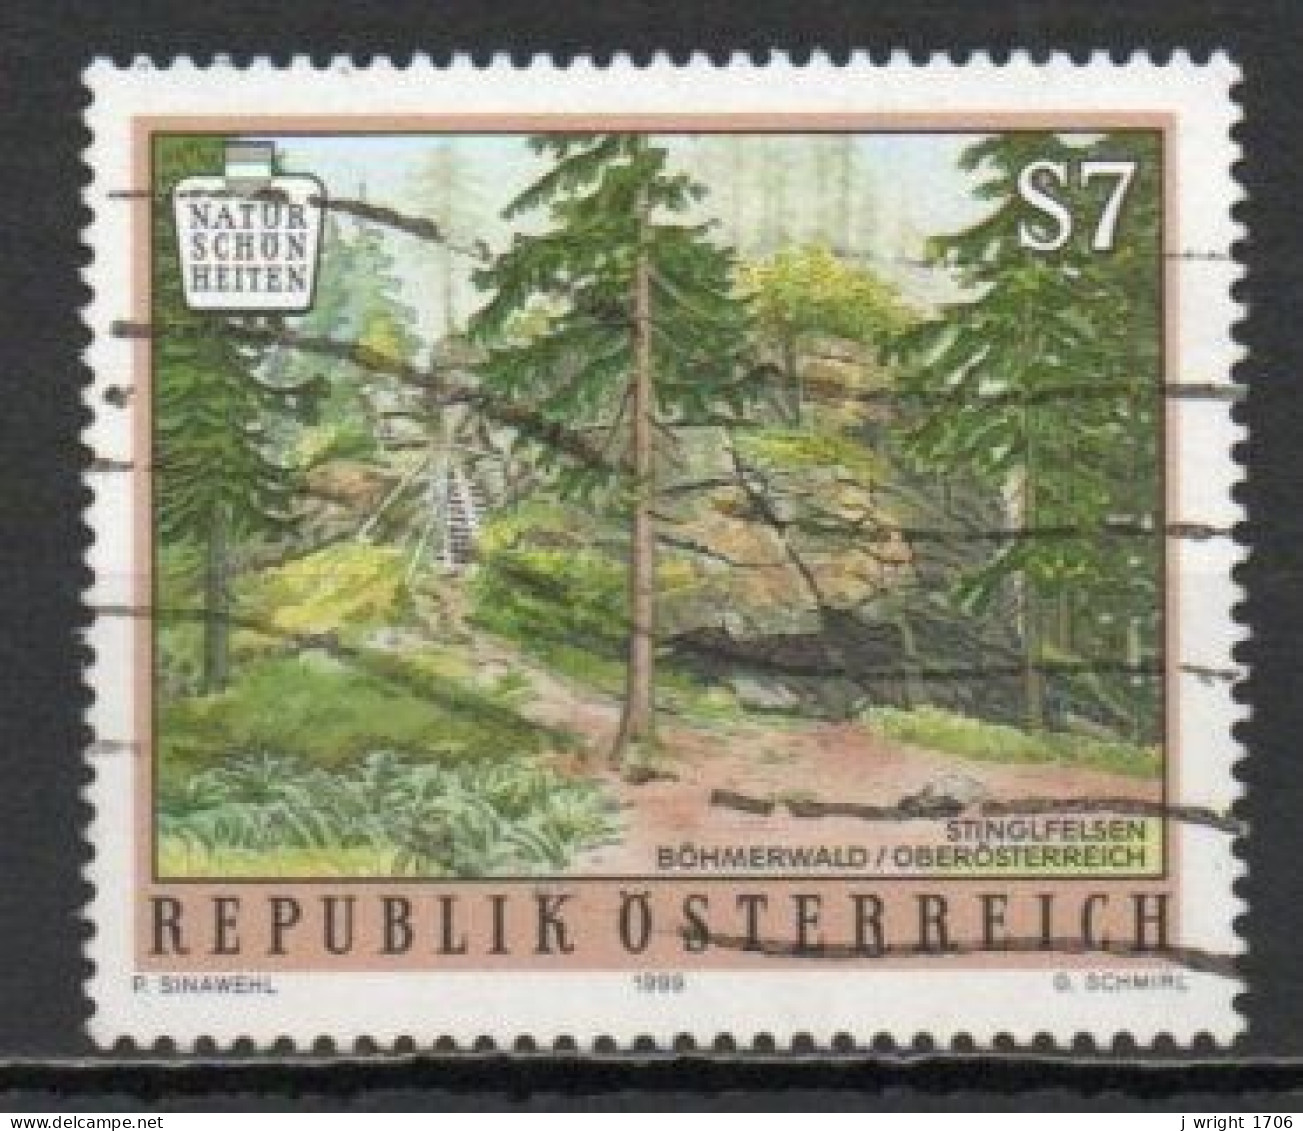 Austria, 1999, Austrian Natural Beauty/Stinglfelsen, 7s, USED - Oblitérés